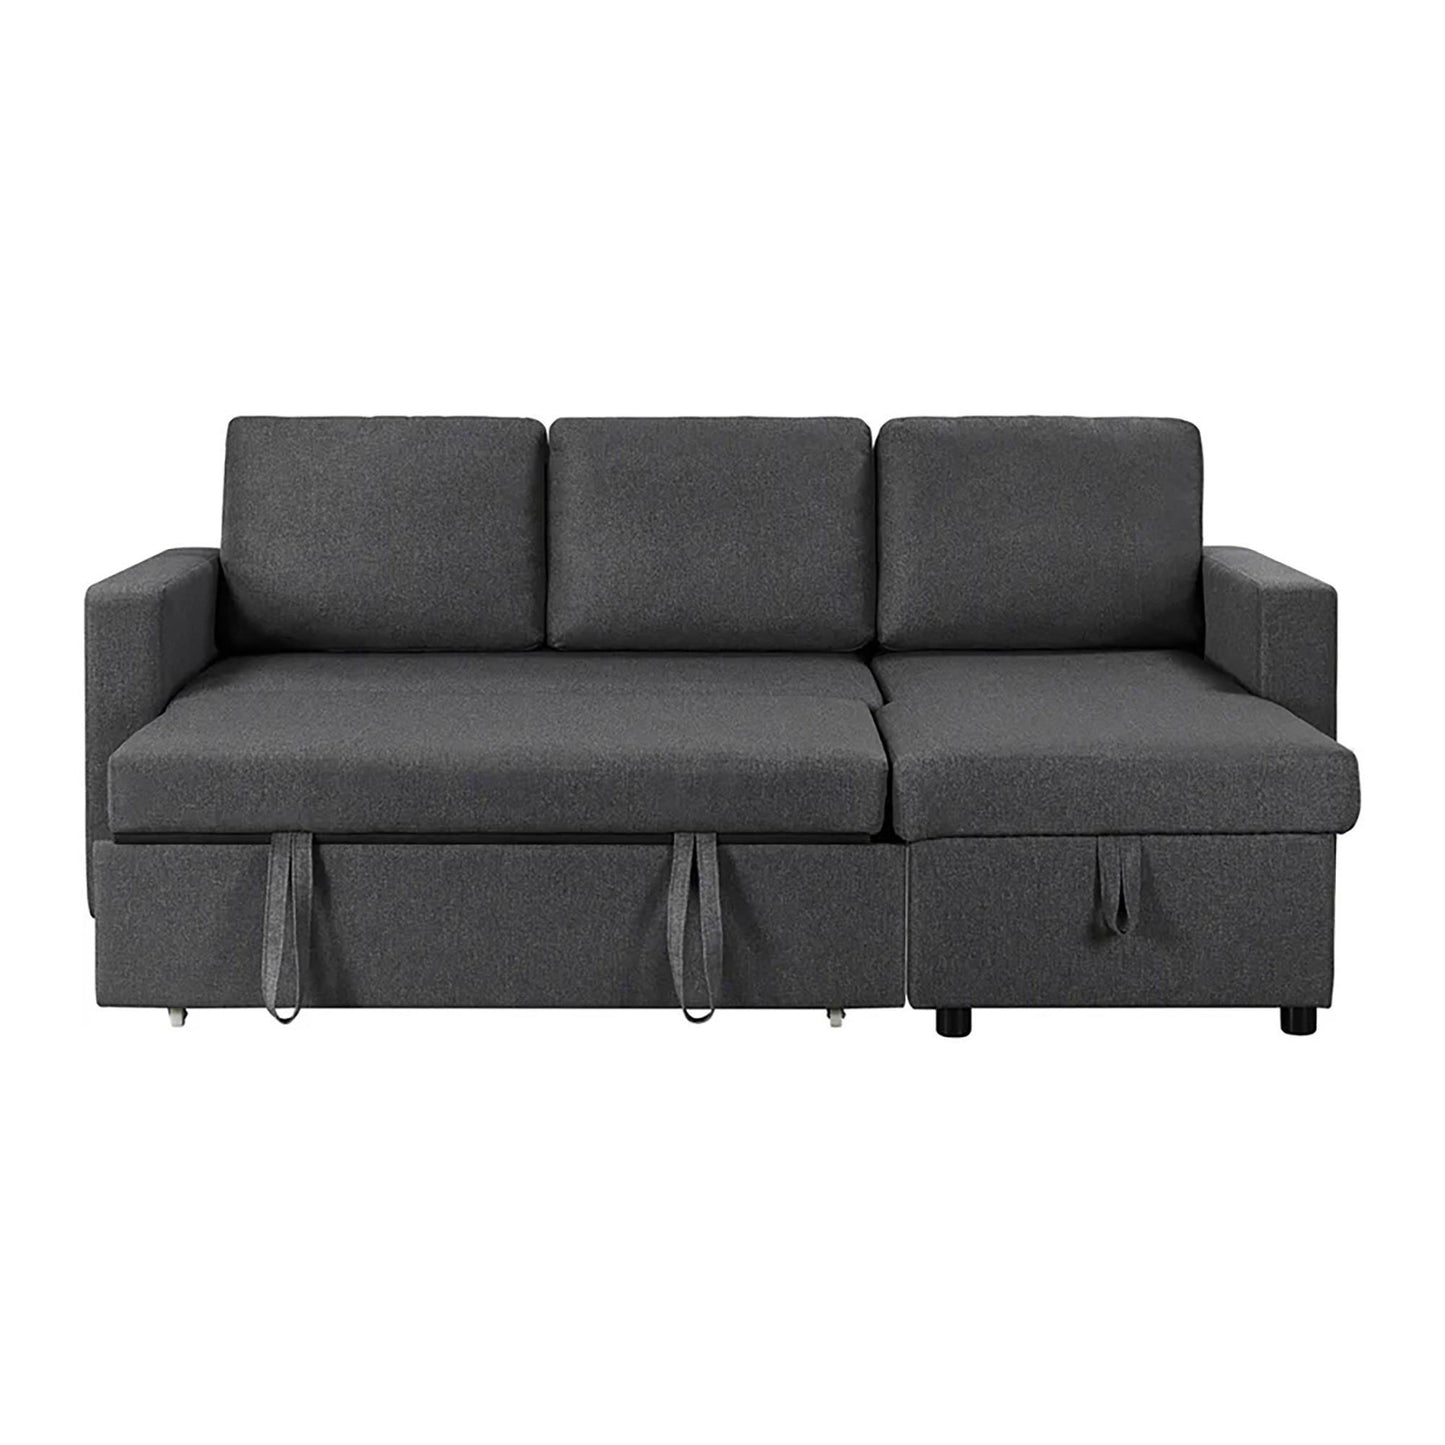 Avila Reversible Sectional Sofa Bed in Dark Gray